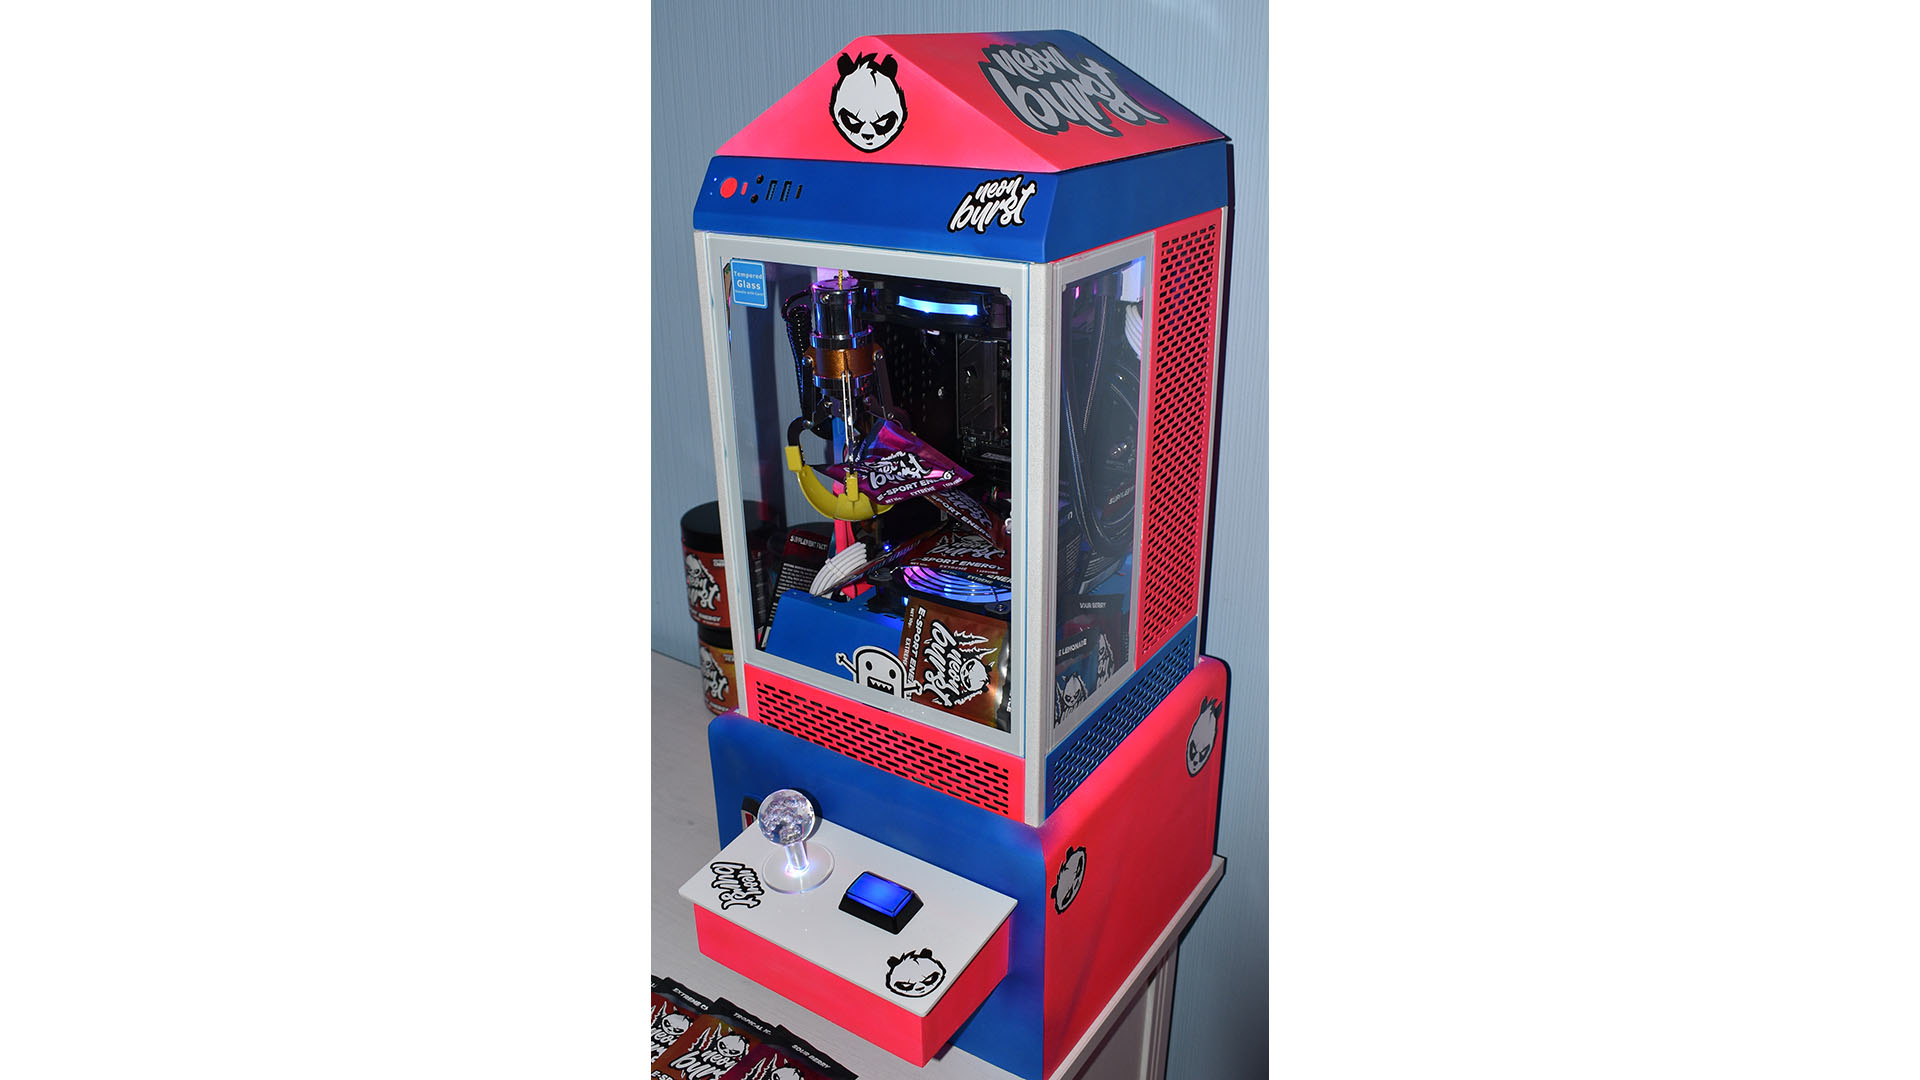 Der Claw-Arcade-Gaming-PC in Blau und Rot